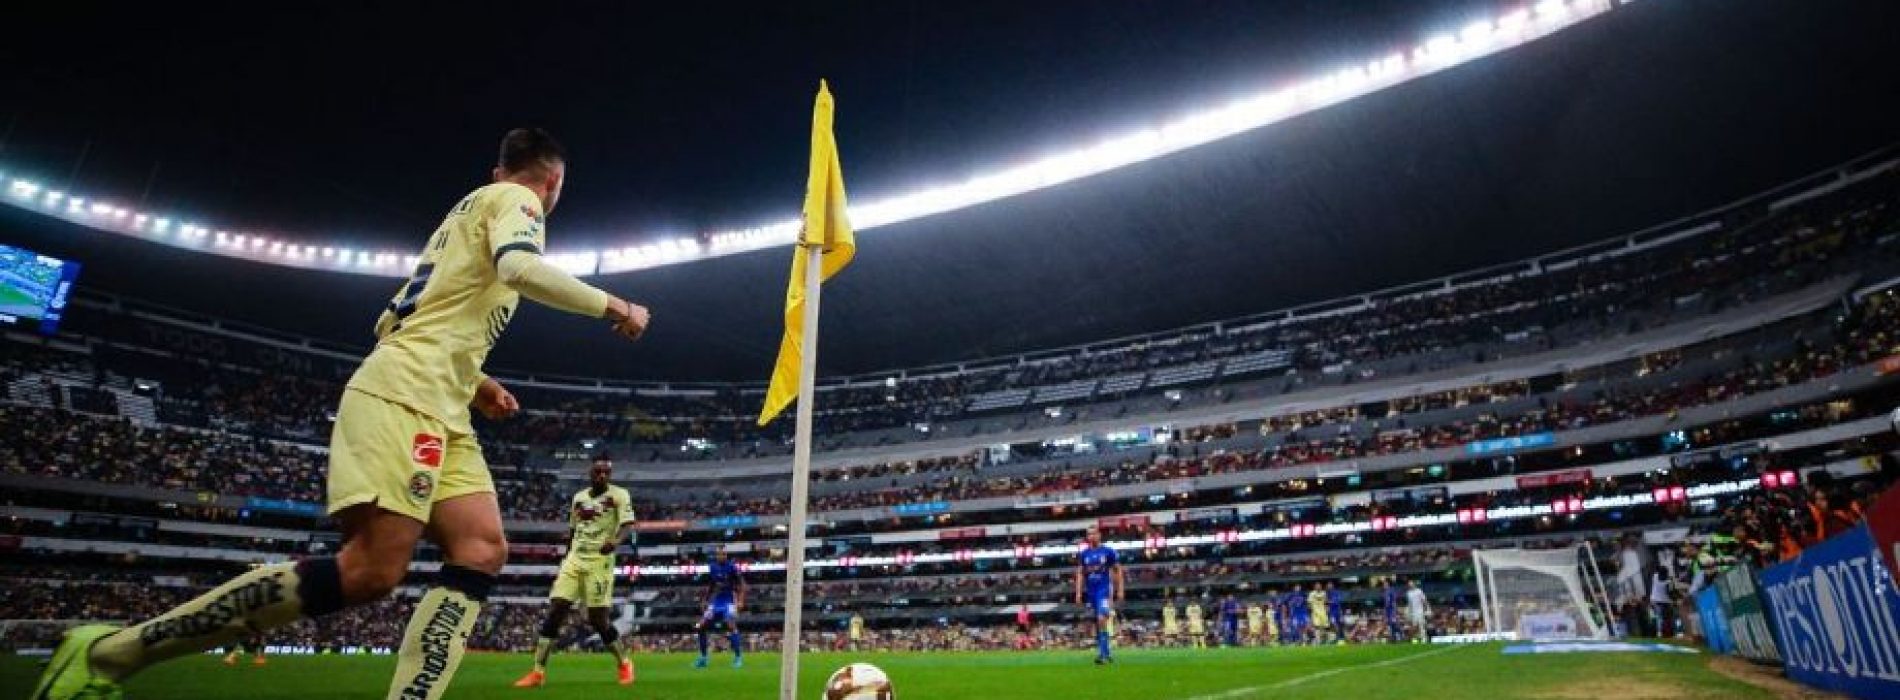 Miguel Herrera evade hablar sobre el arbitraje en la ida ante Tigres